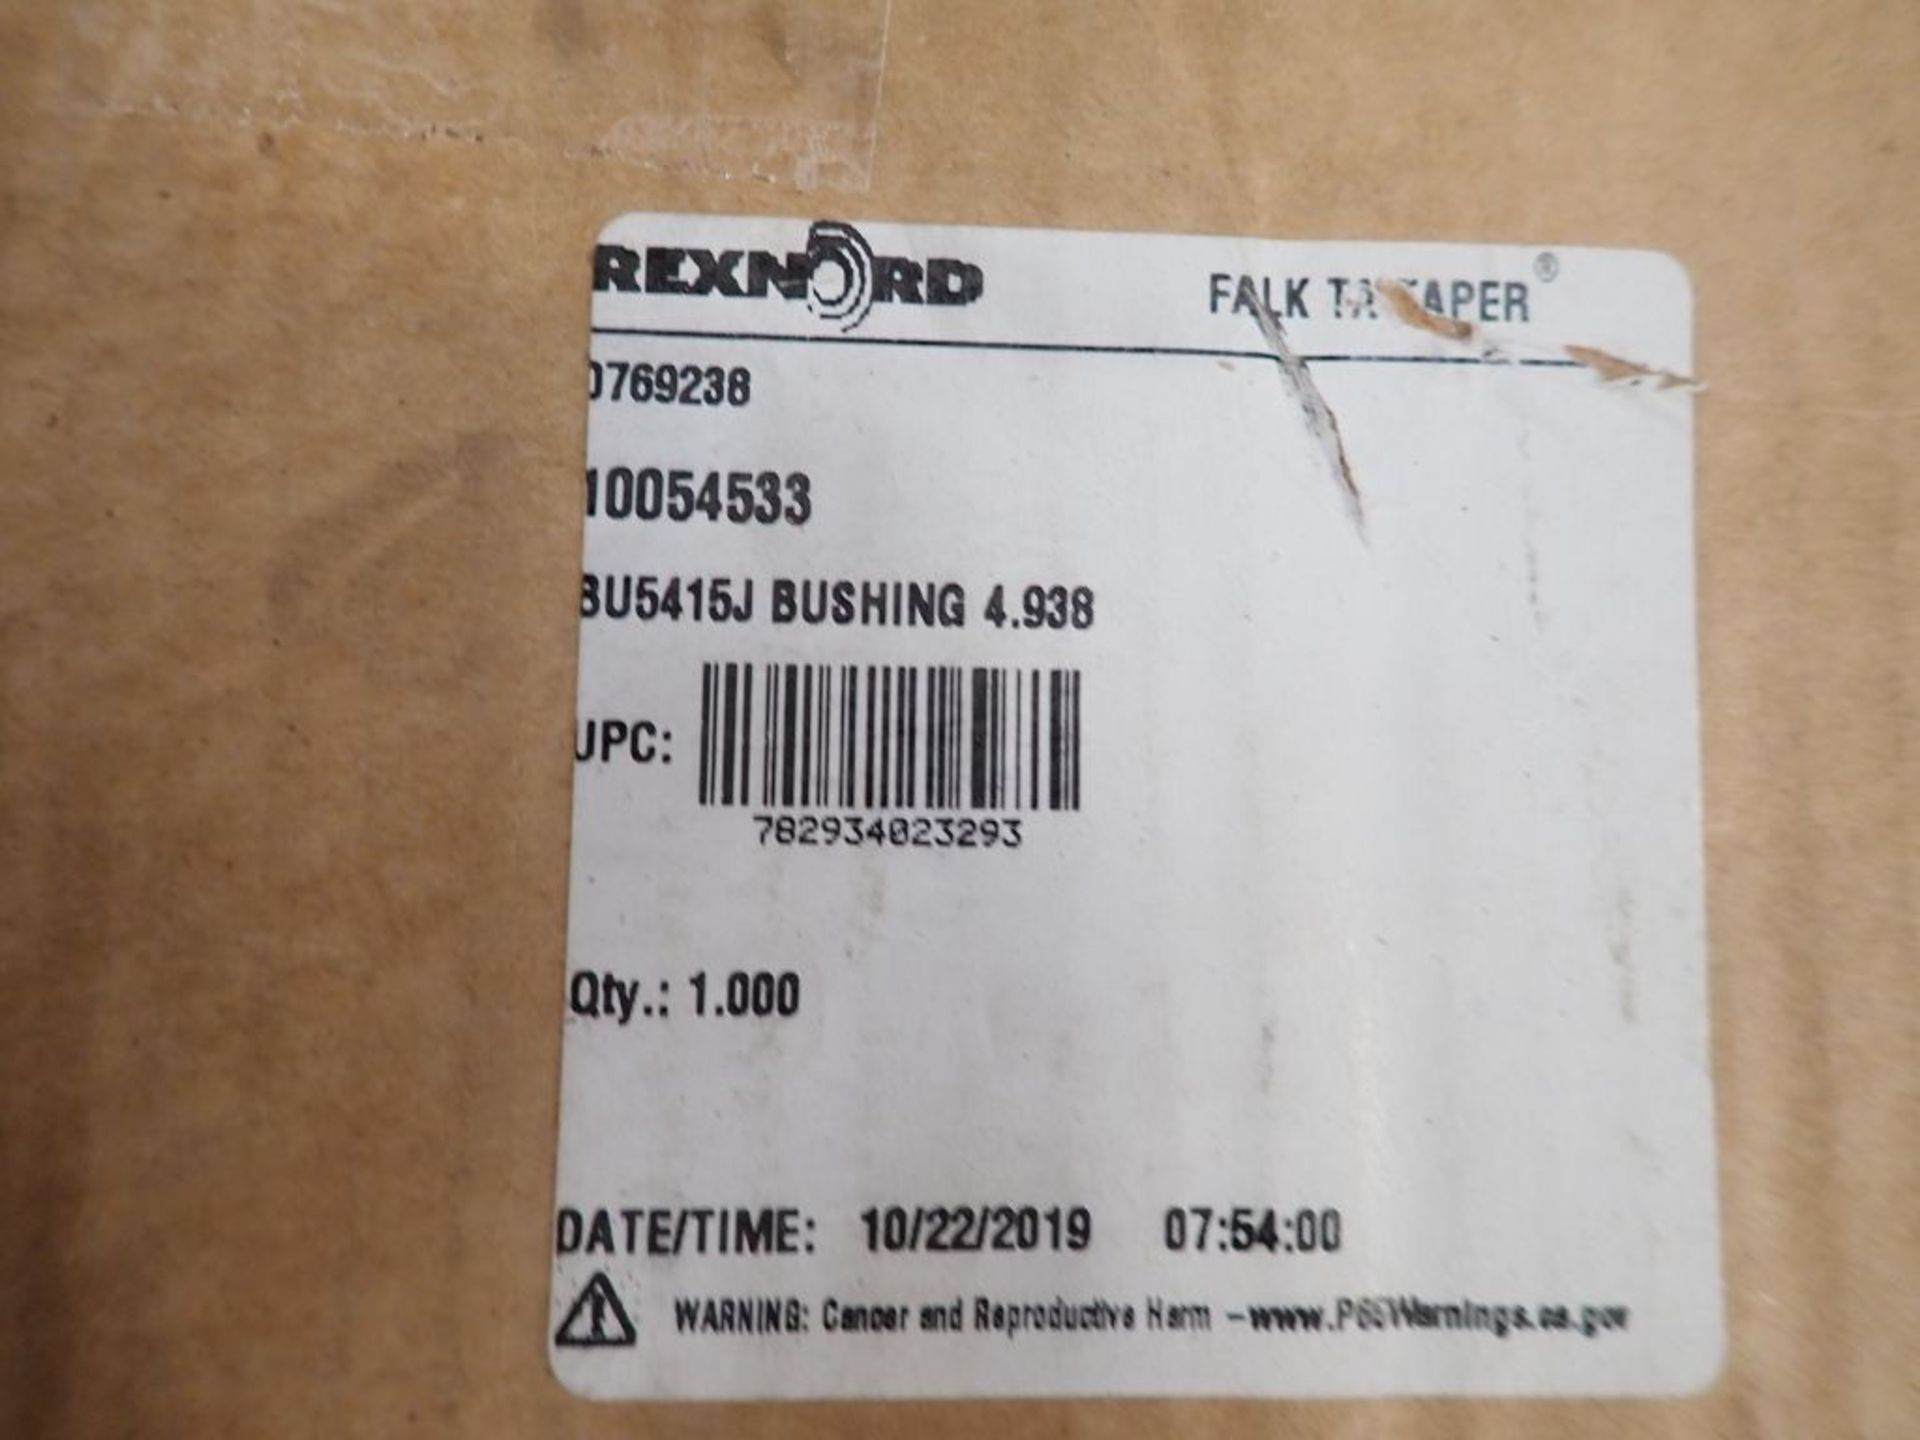 Falk Enclosed Gear Drive w/Components - Model No. 5415 J25 A ; 26.11 Ratio; Tag: 215684 - Image 11 of 21